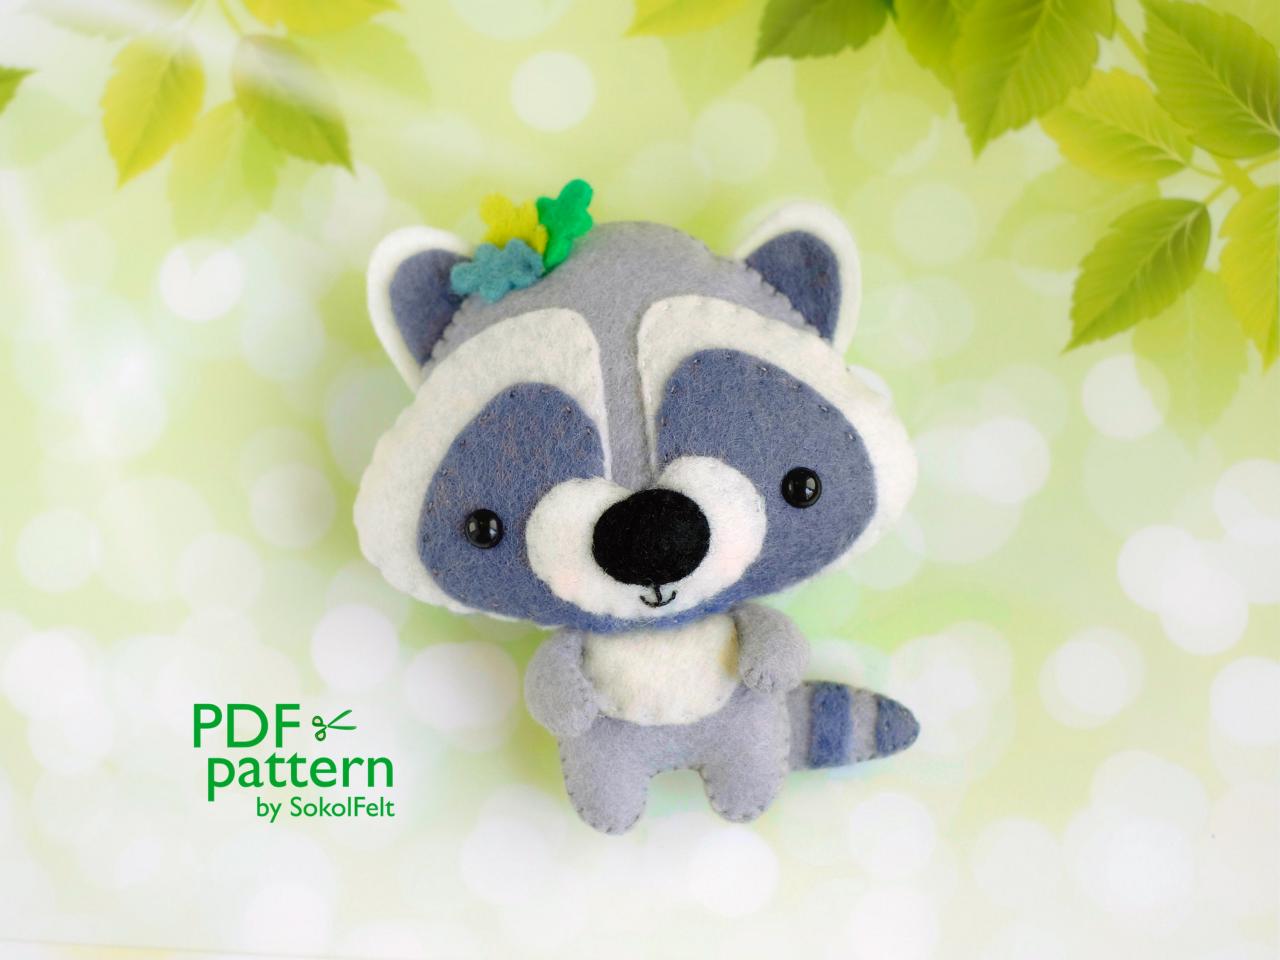 Raccoon PDF pattern, Felt woodland baby animal toy sewing tutorial, Baby crib mobile toy, Teddy bear ornament